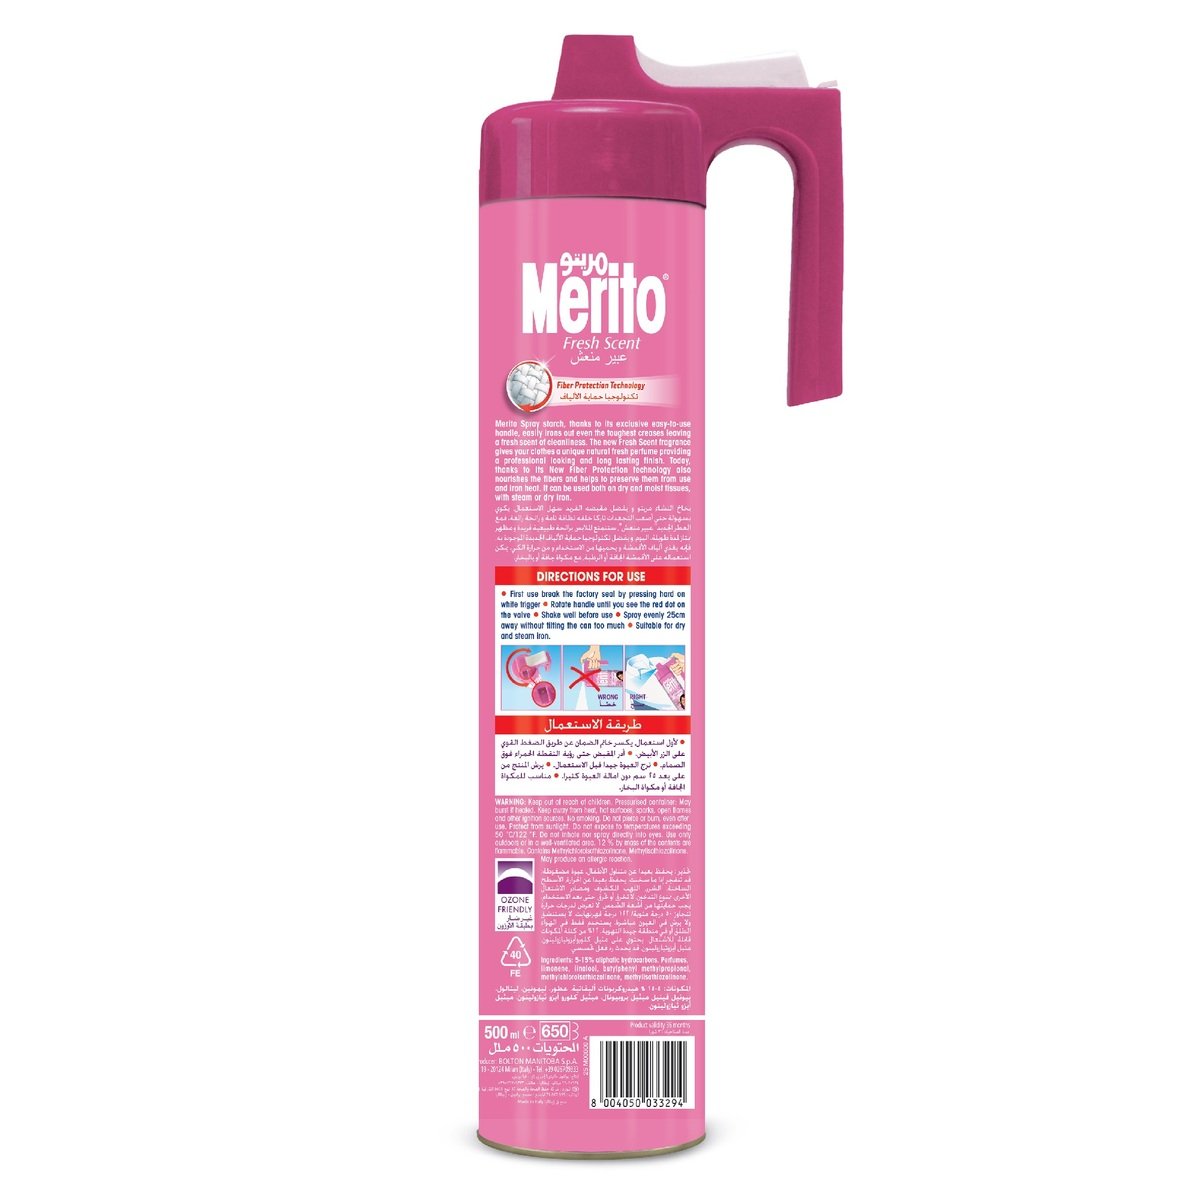 Merito Spray Starch Fresh Scent 500ml